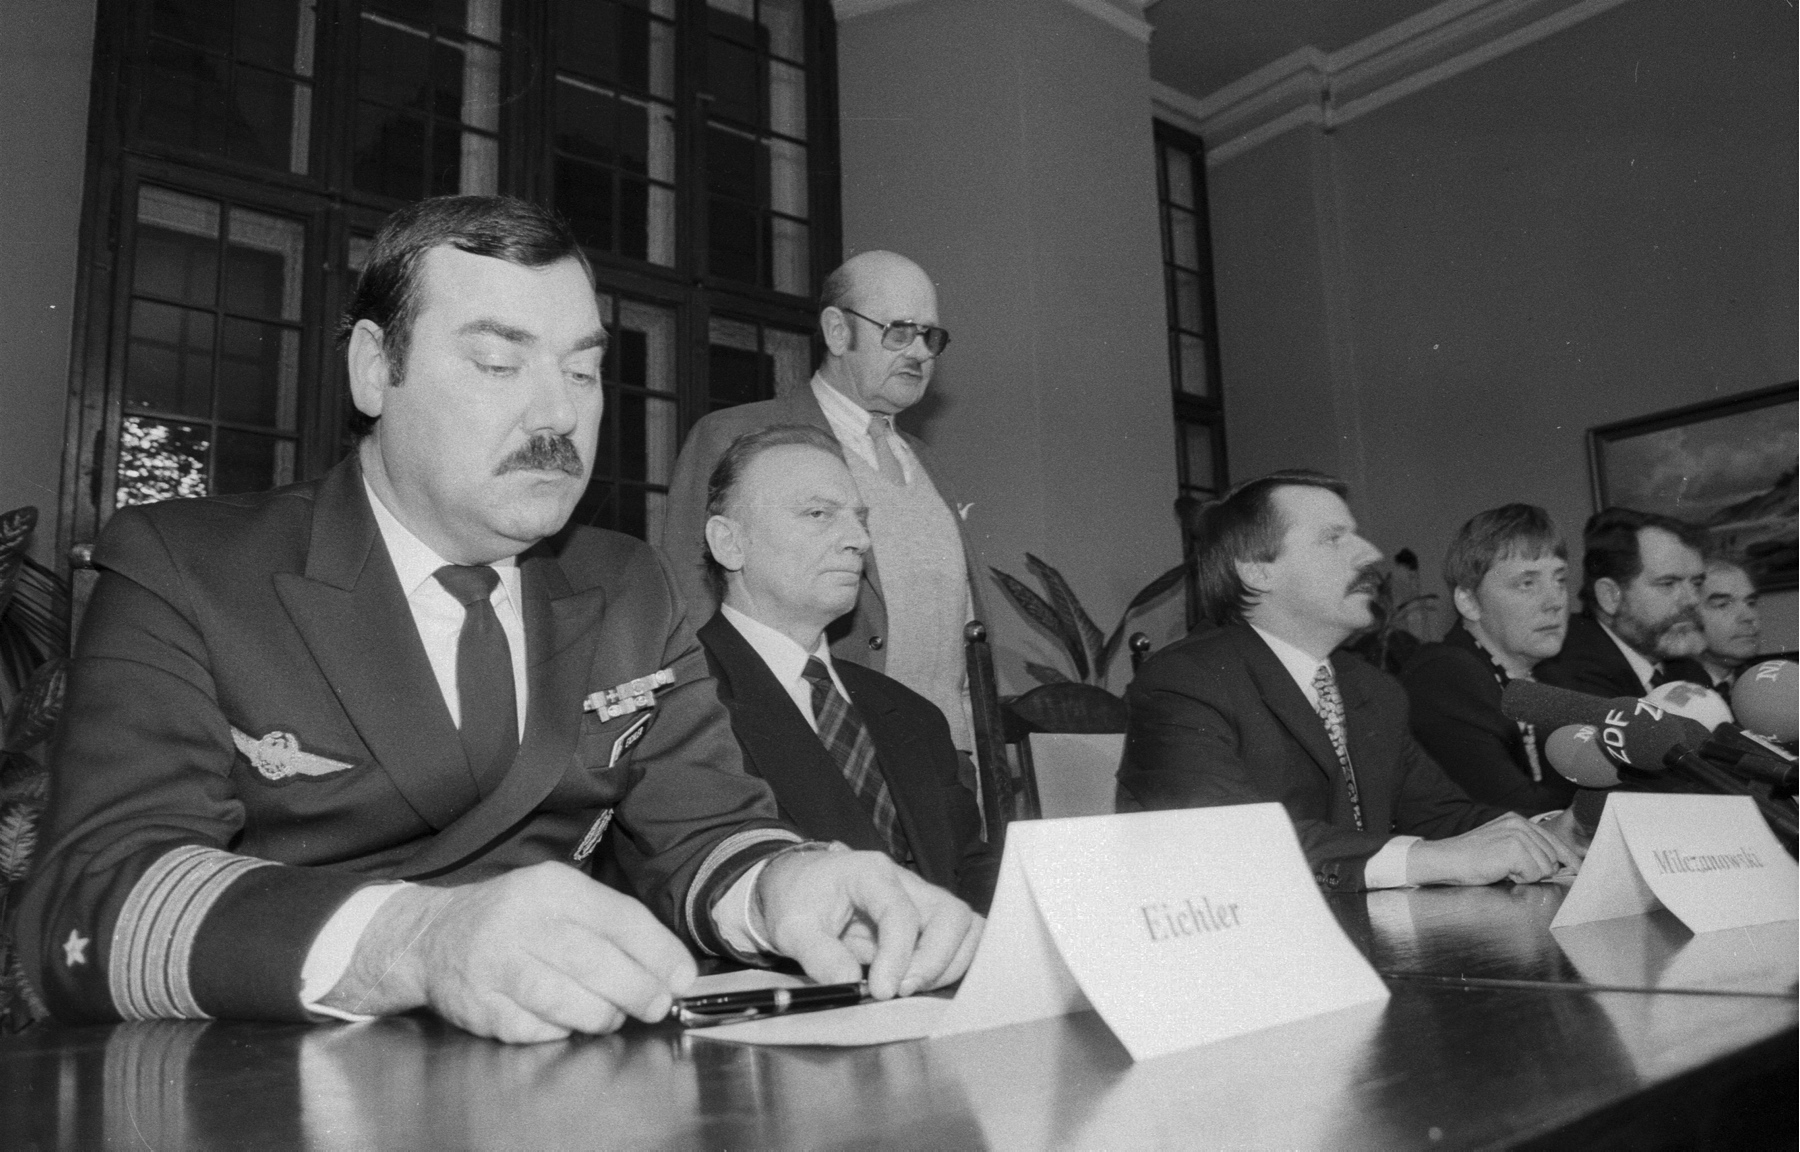 Konferencja prasowa na temat katastrofy z udziałem władz niemieckich i polskich, Stralsund, 15 stycznia 1993 r.